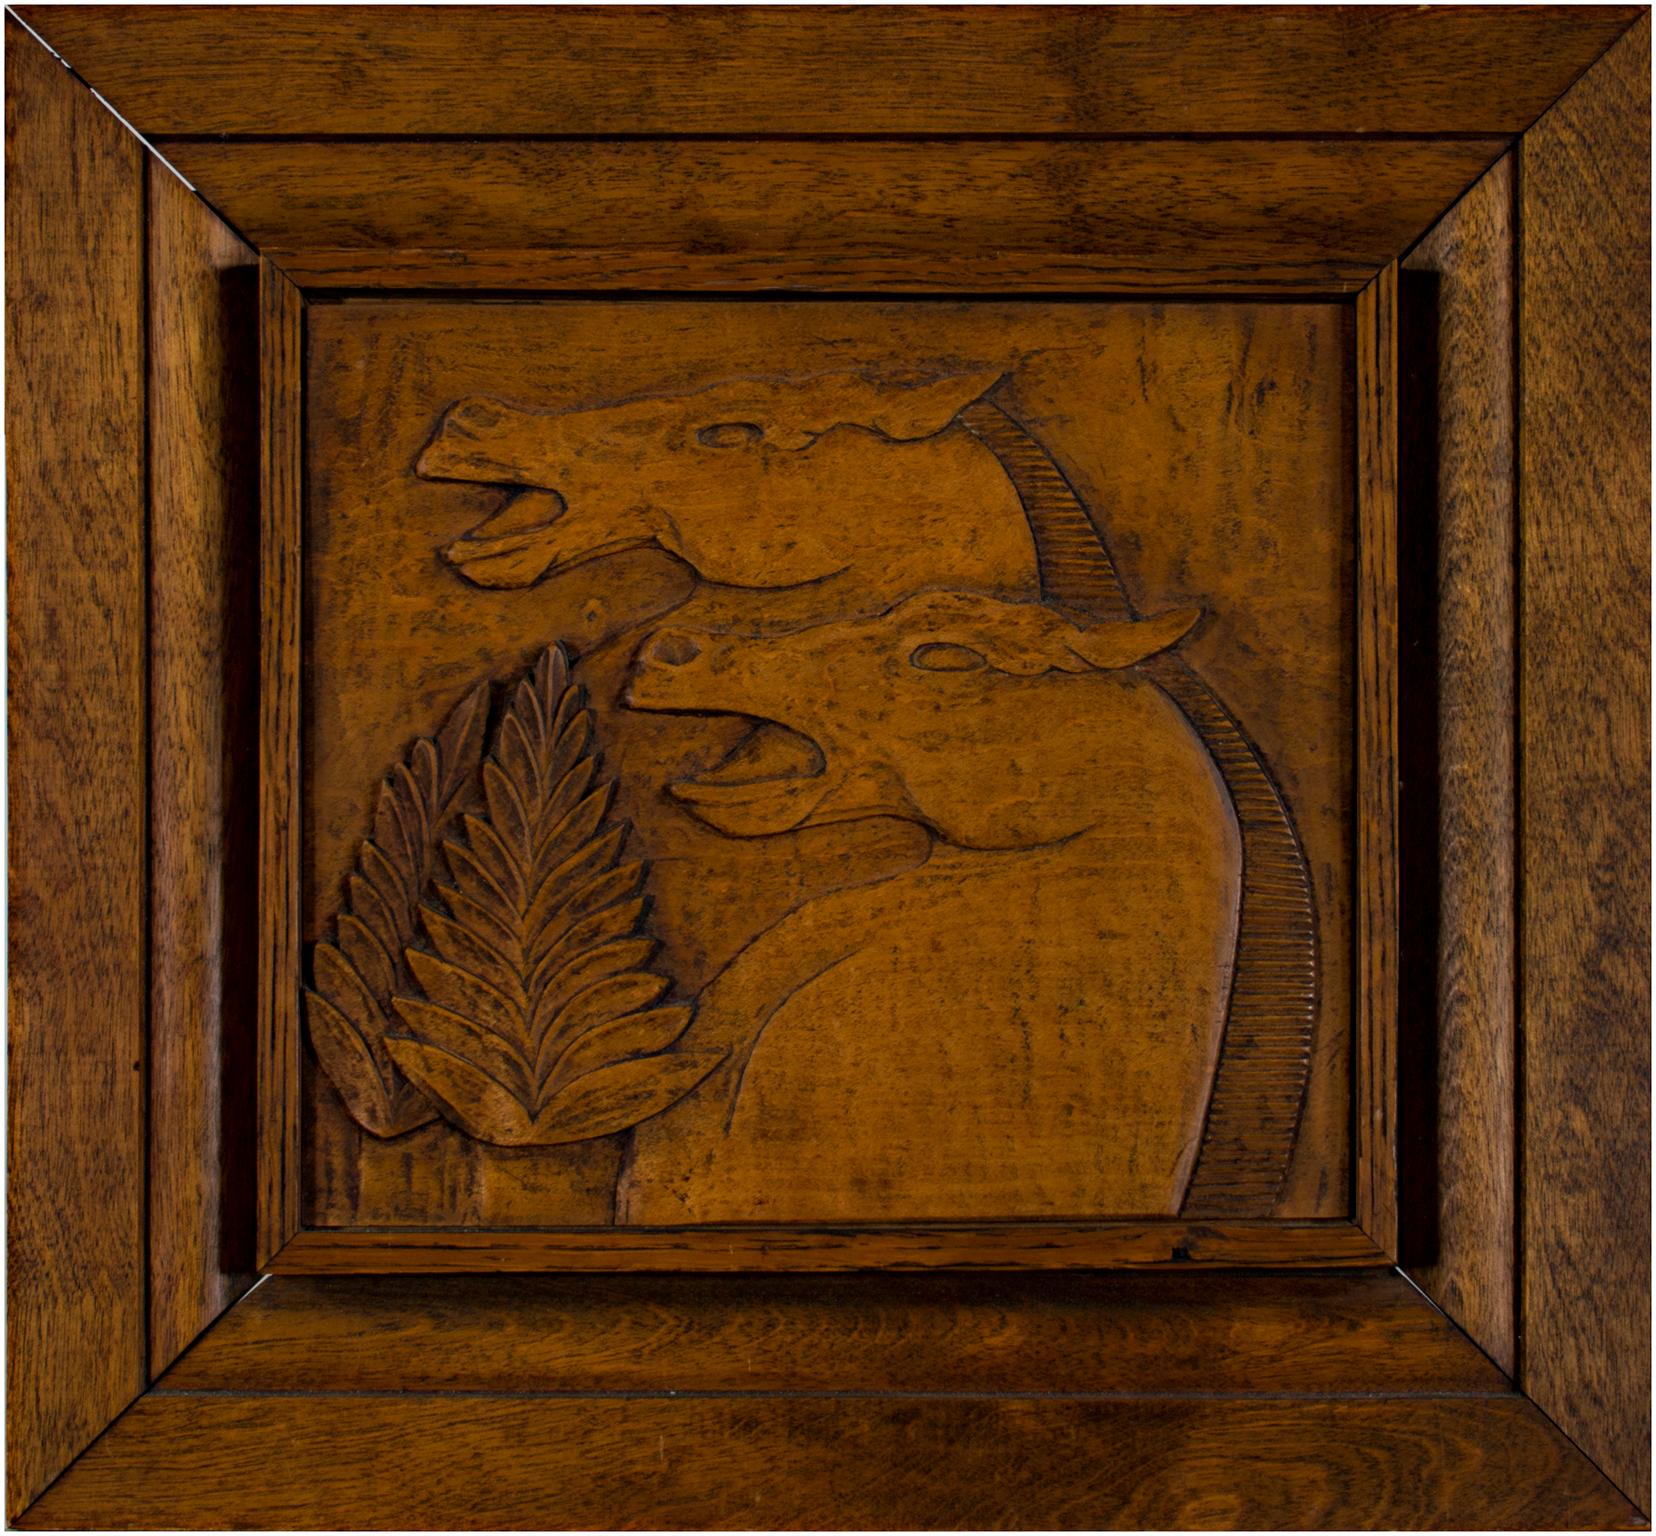 "Carved Horse Head" ist eine von Marshall "Buster" Shields aus Mahagoni handgeschnitzte Flachreliefskulptur. Es zeigt zwei Pferde im Profil, eines hinter dem anderen, die sich mit offenen Mäulern aufbäumen. Ihre Mähnen sind kurz geschoren, und sie